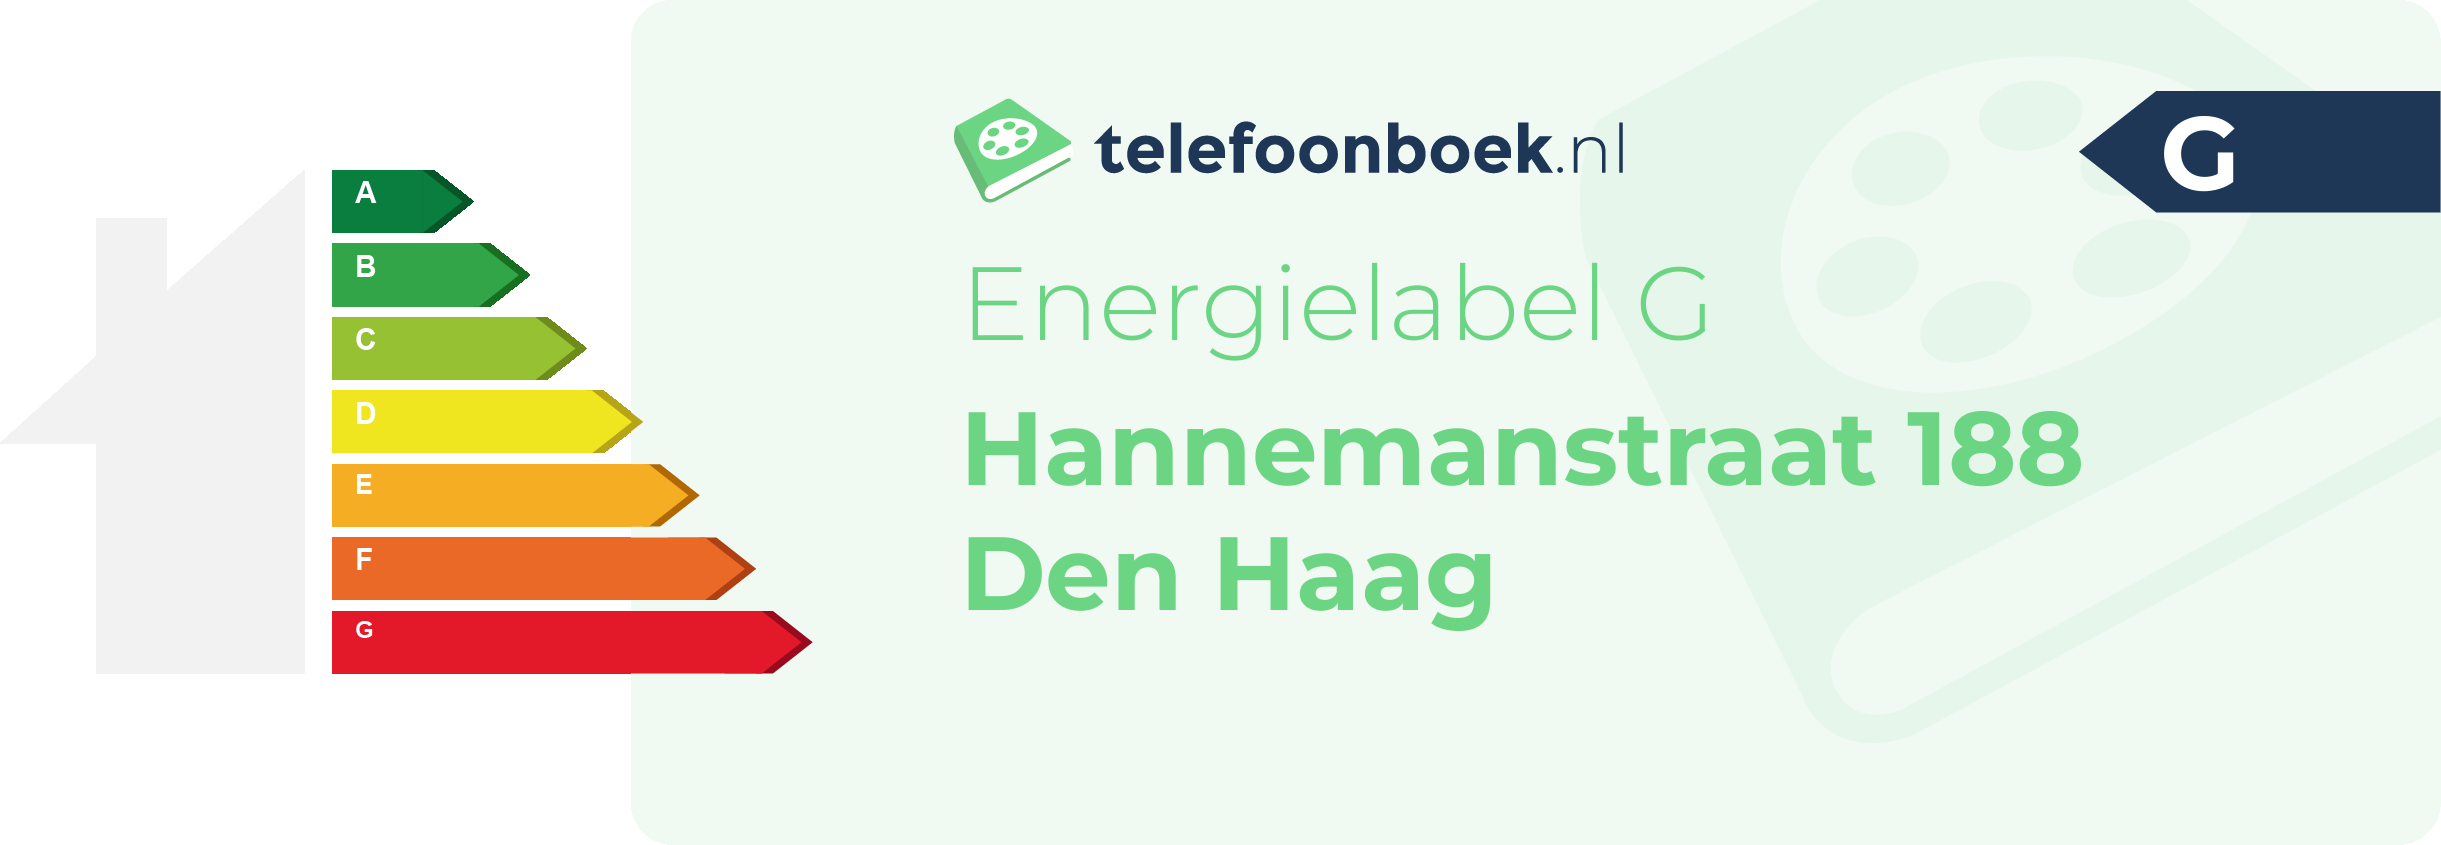 Energielabel Hannemanstraat 188 Den Haag